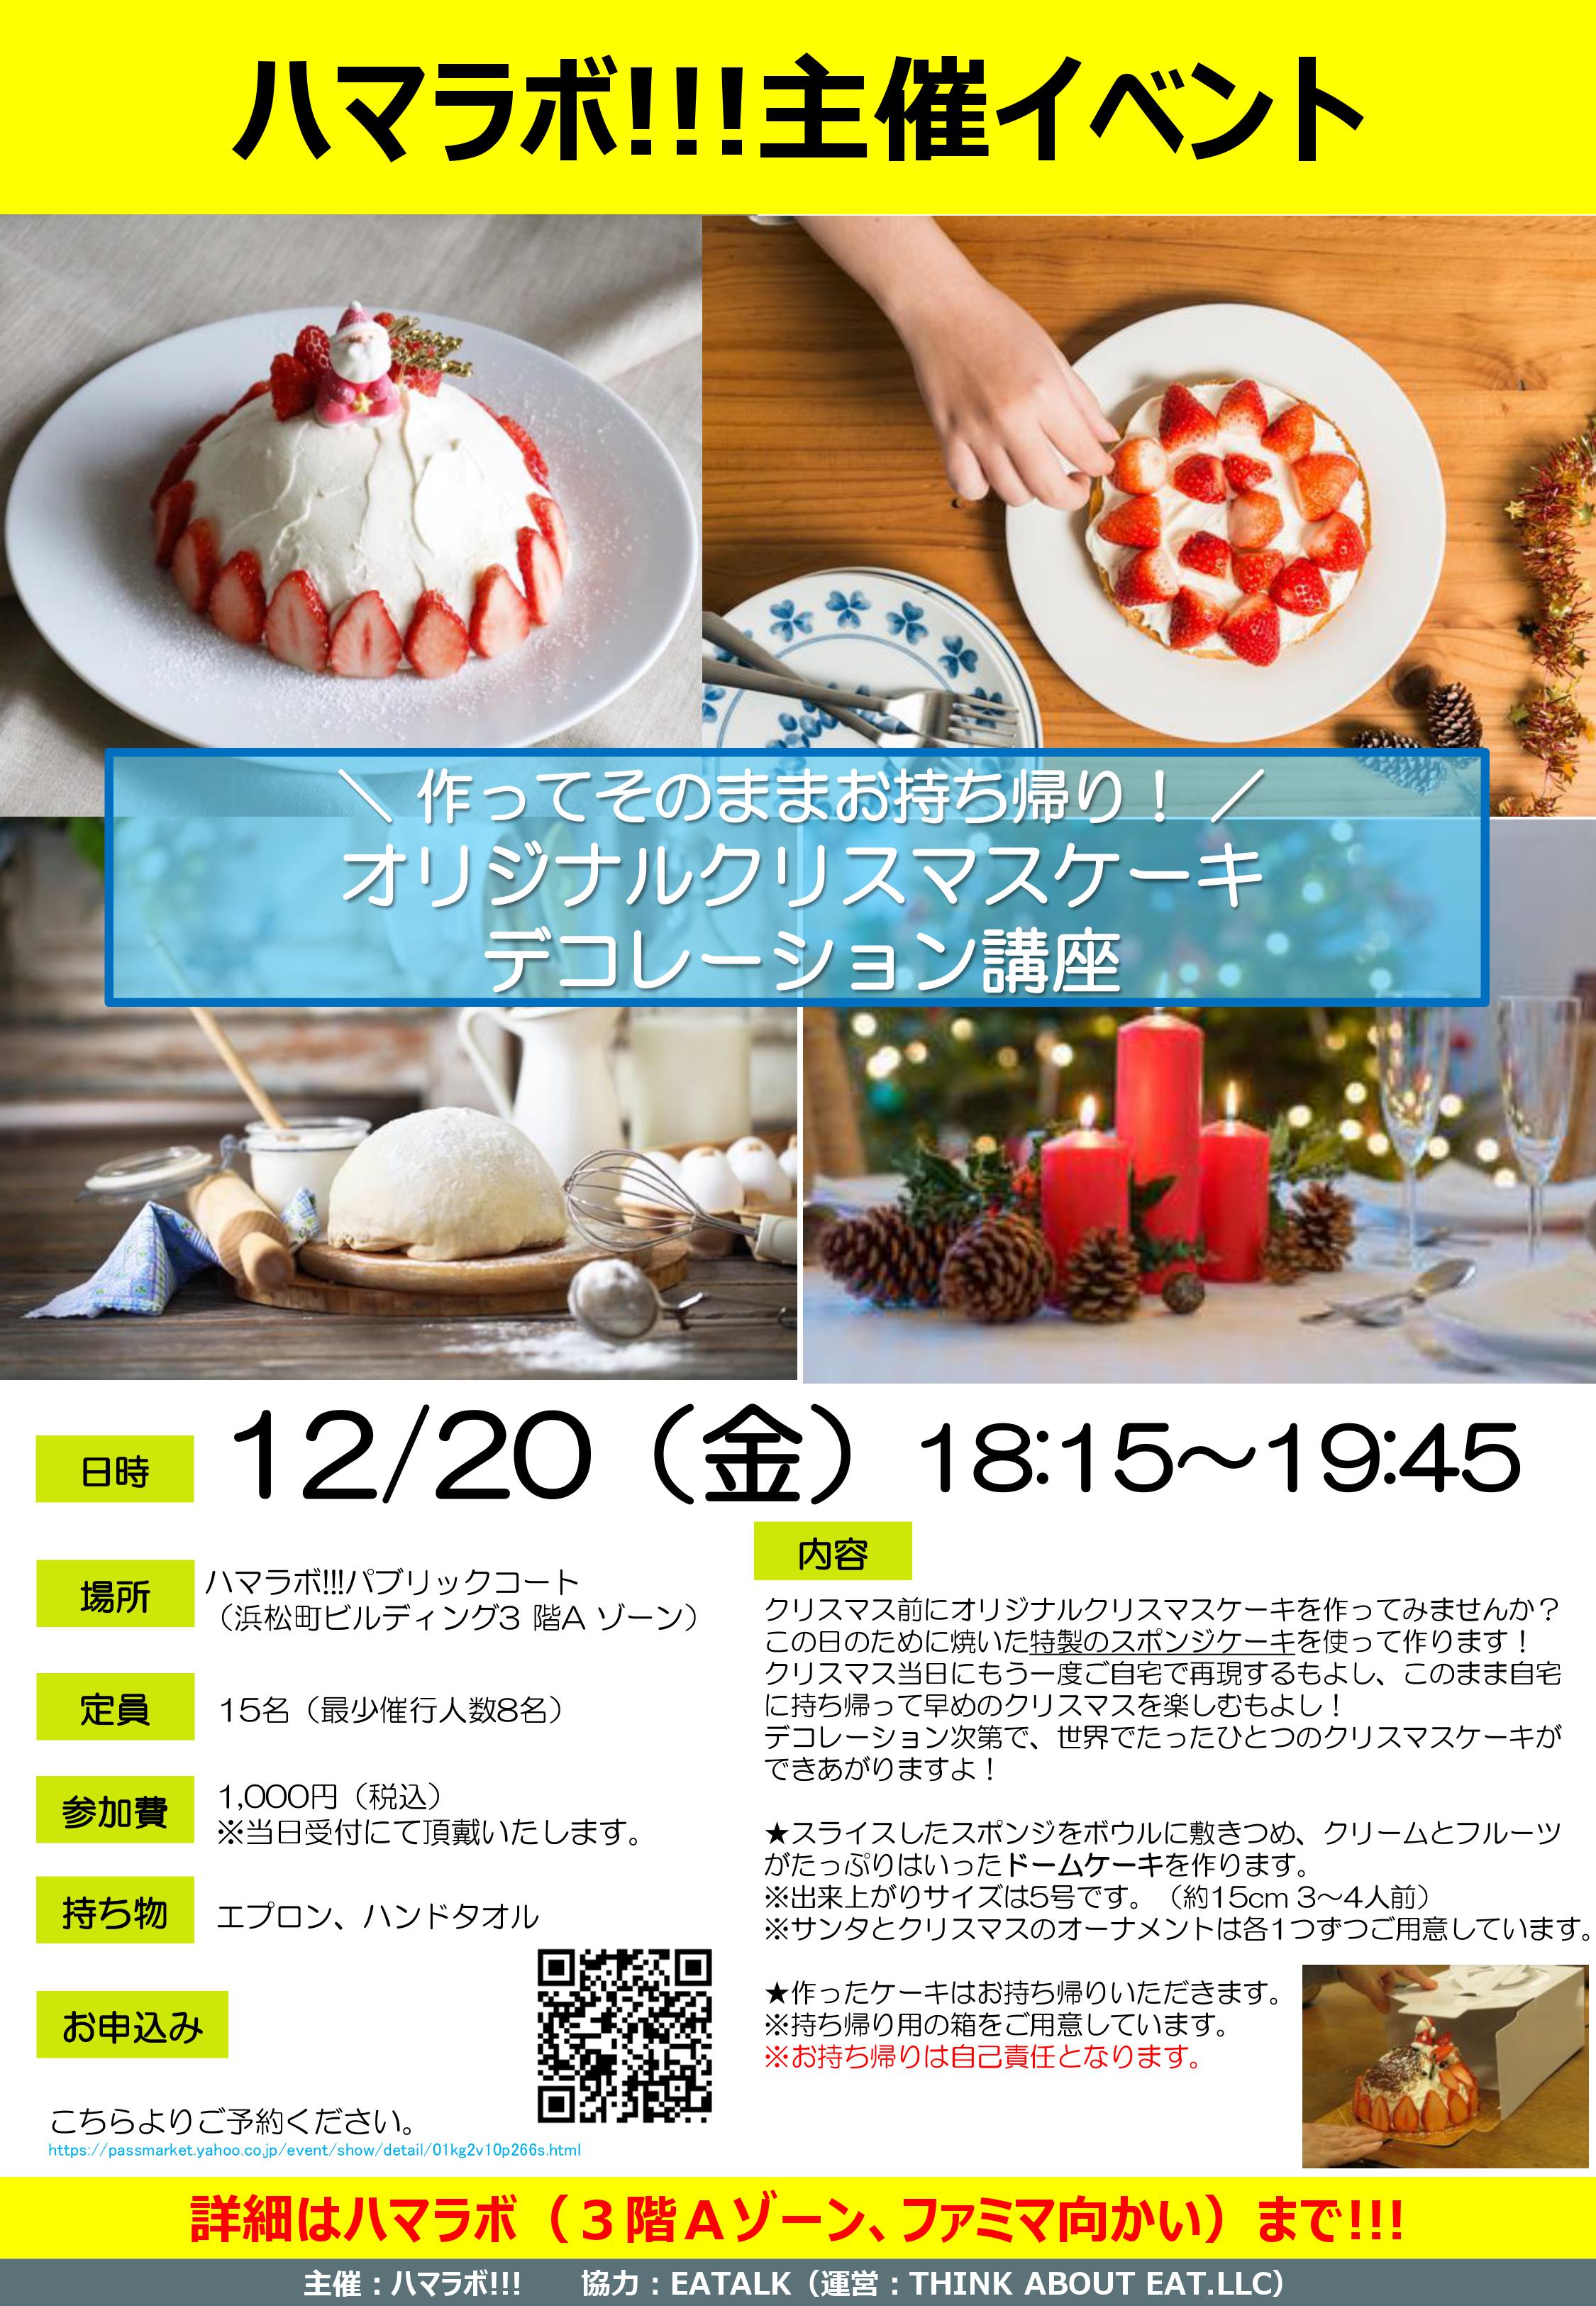 12 20 金 オリジナルクリスマスケーキデコレーション講座 Hama Lab 浜松町研究所